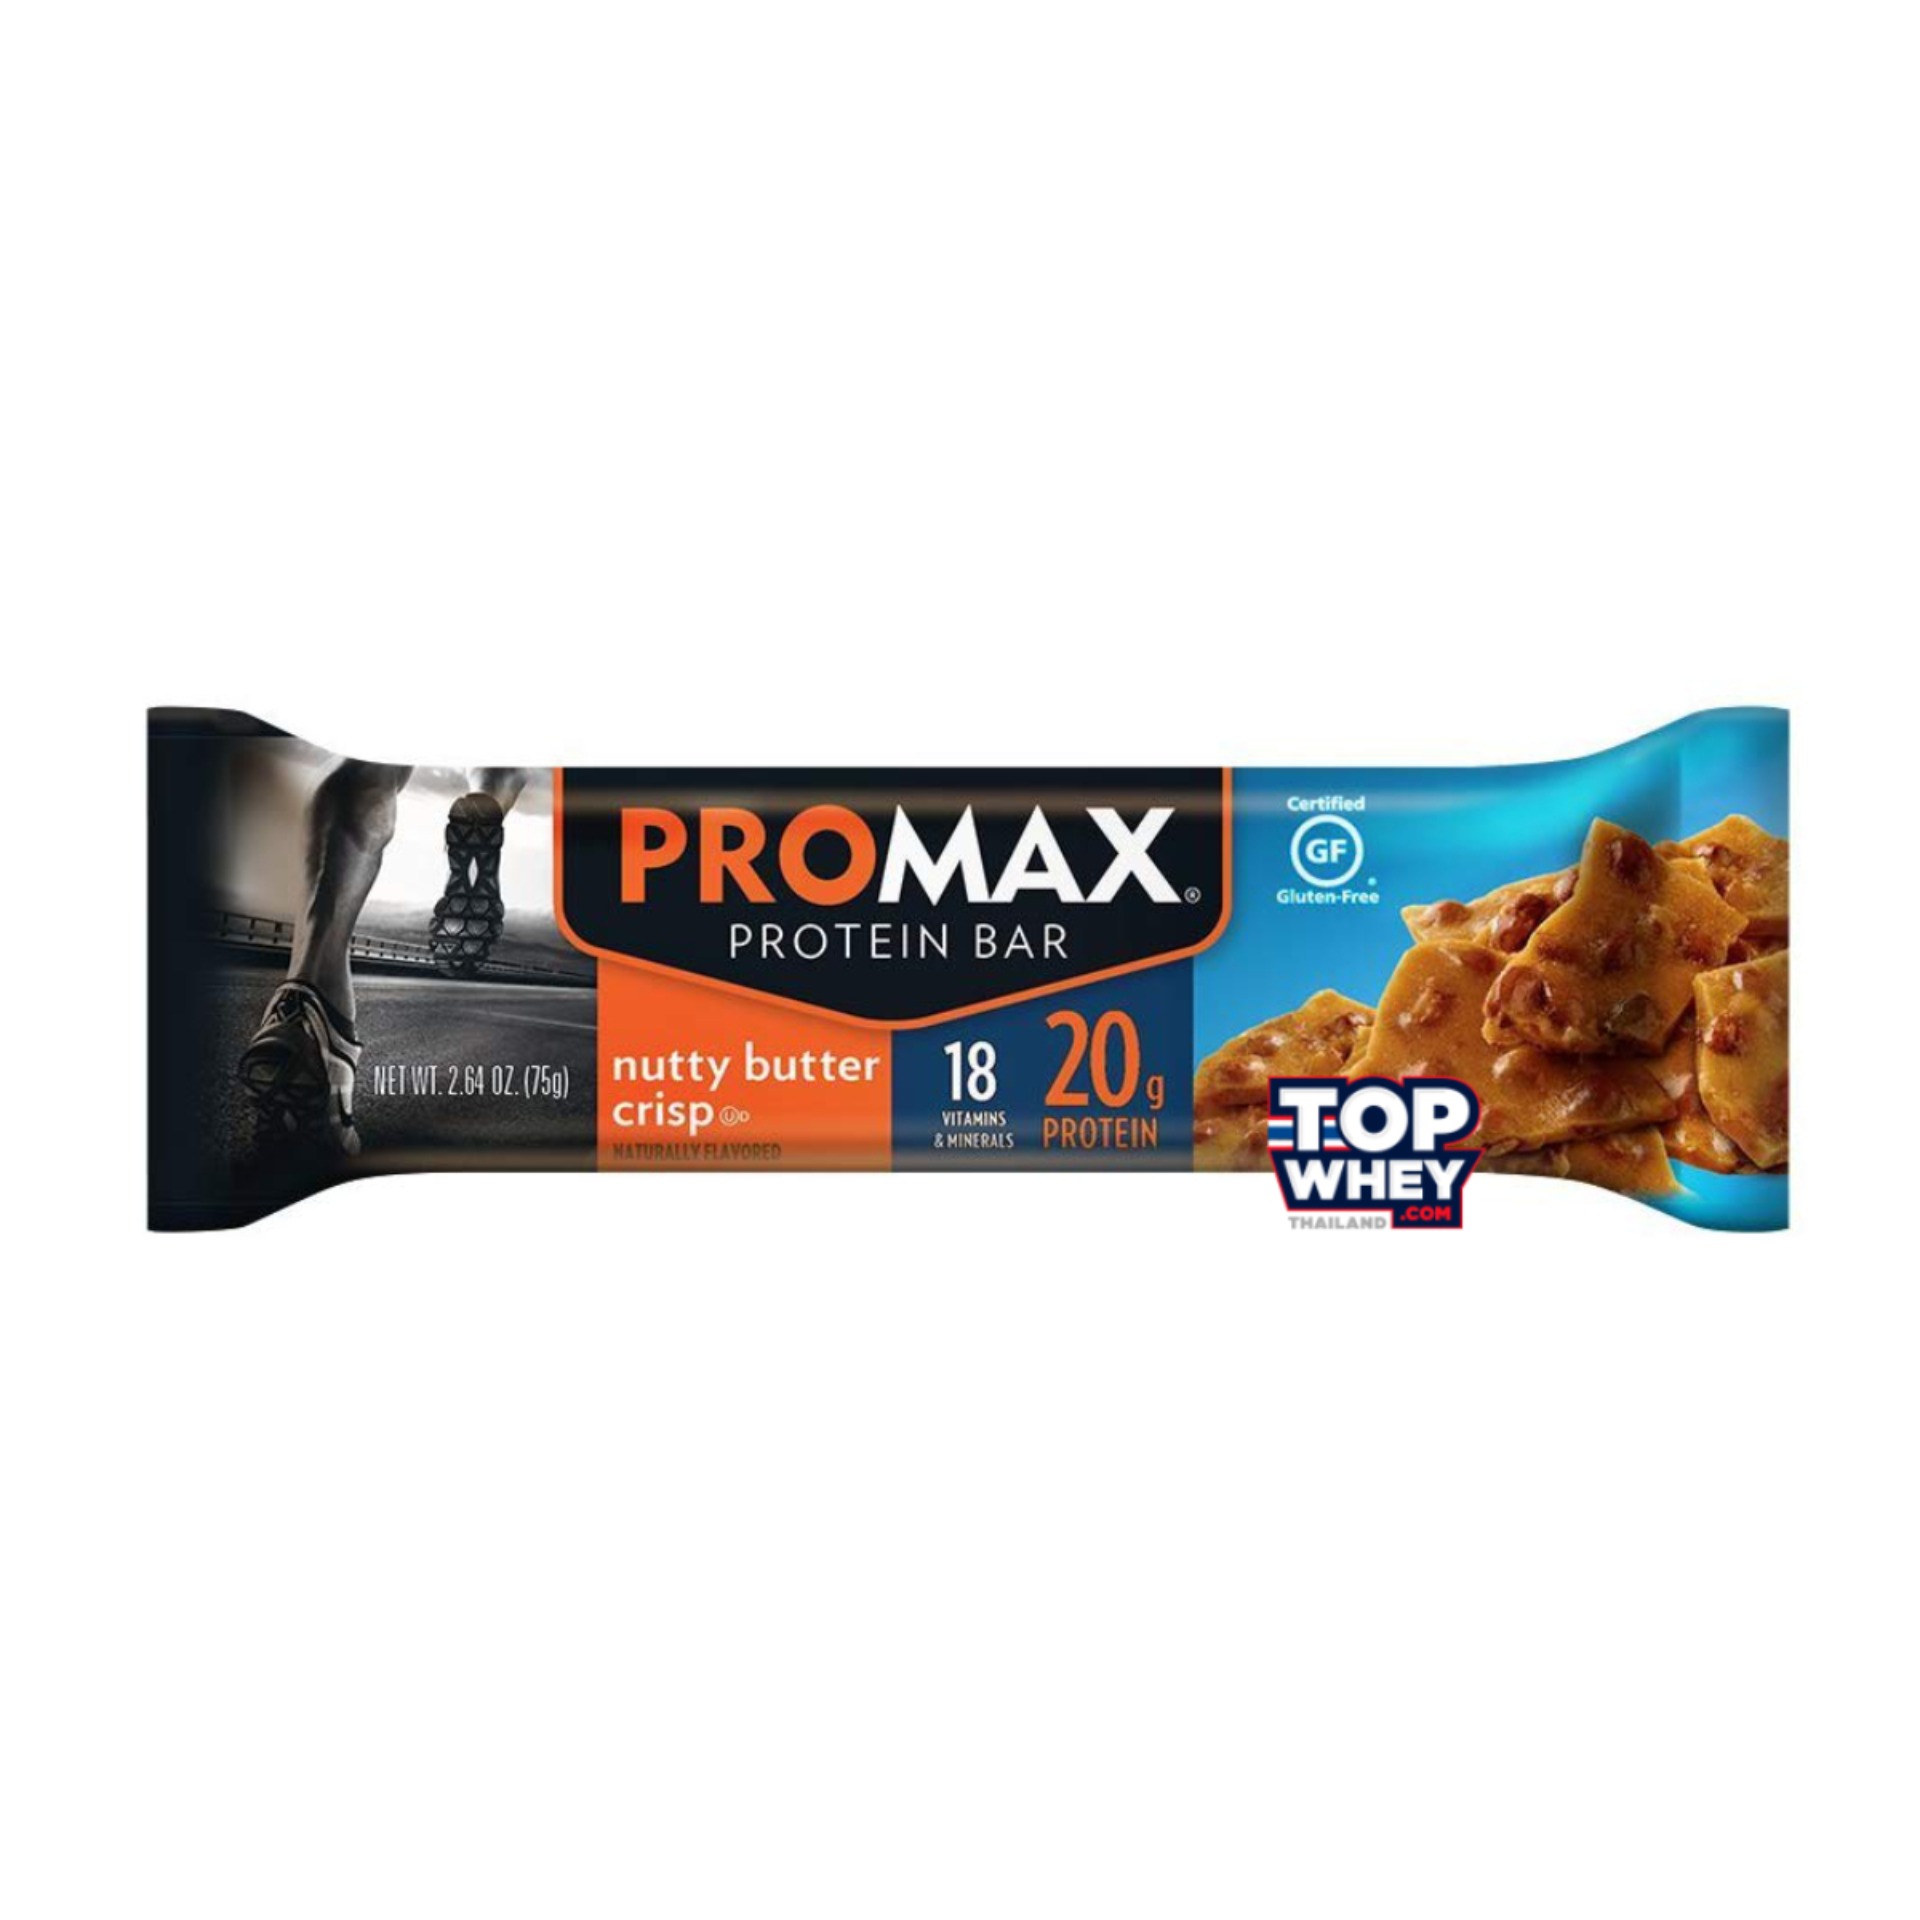 Promax Protein Bars - 1 Bar Nutty Butter Crisp  โปรตีนบาร์  มีส่วนผสมของเวย์โปรตีน  สามารถทานเล่น  หรือแทนมื้ออาหารได้  มีปริมาณของโปรตีนที่สูง